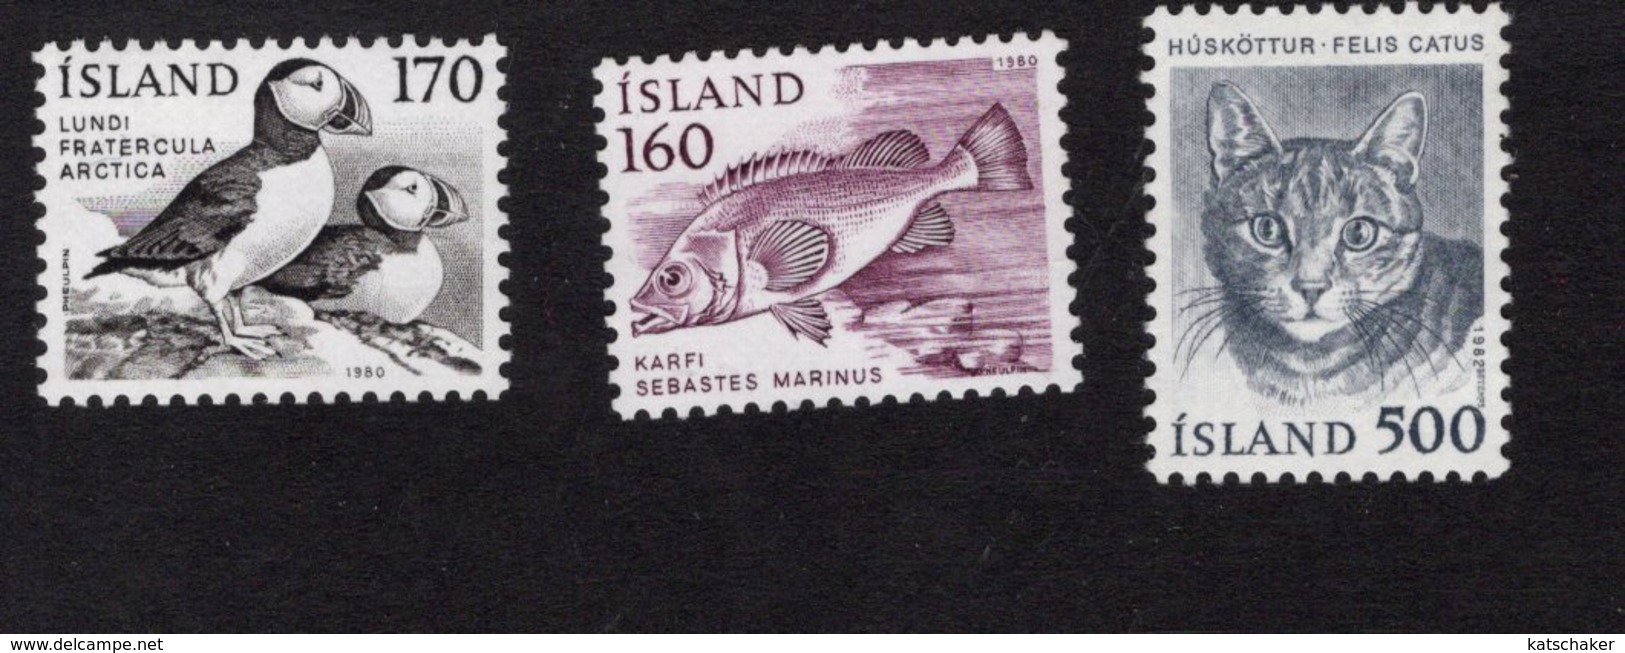 673724575 ICELAND 1982 POSTFRIS MINT NEVER HINGED POSTFRISCH EINWANDFREI SCOTT 556 557 558 BIRD FISH CAT - Ongebruikt